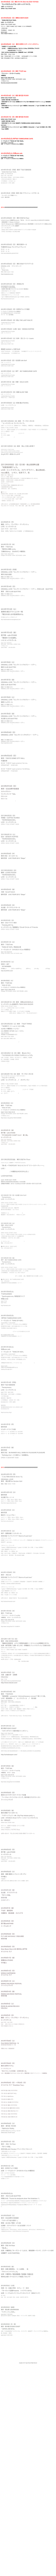 2014年4月6日（日）東京 代々木 Zher the ZOO YOYOGI
「ヒックスヴィル アコースティック ライブ」
 出演：ヒックスヴィル
OPEN 17:30／START 18:00





2014年3月23日（日）湘南台 BEN'S BAR
「SONG RECYCLE TOUR」
LIVE：ヒックスヴィル
OPEN 17:00／START 18:00　
チケット：前売り￥3500／当日 ￥4000（ともに1DRINK別）
【予約方法】BEN'S BARメールフォーム　http://bensbar.jimdo.com/contact/
予約開始日　1月20日（月）
BEN'S BAR
神奈川県藤沢市湘南台５-３-３０






2014年3月22日（土） 東京 吉祥寺 スターパインズカフェ
『お彼岸ナイトvol.8 2014春』　
 【LIVE】： 木暮晋也＆Rolands（おかもとえみbs／田中佑司dr／TR-707） 
　　　　　　HAKASE-SUN ／ トレモノ
【DJ】ALOHA FISHMANS DJs（黒崎知耶 / mar1. / 田戸圭悟）
開場／開演　17:00／17:30
料金：予約¥2,700円（ドリンク代別）　当日¥3,000円（ドリンク代別）　
学割（学生証提示で予約・当日料金から300円引き）
http://alohafishmans.com







2014年2月20日（木）東京 下北沢 lete
『ファンシー・ストローク vol.21』
木暮晋也　　
Open 19:30 / Start 20:30
Charge 予約 ¥2,500 + drink / 当日 ¥2,800 + drink 
ご予約はこちら
http://www.l-ete.jp/live/1402.html#d20






2014年2月18日（火）東京 新代田 FEVER
OPEN 19:00／START 19:30
【出演】初恋の嵐／SCOOBIE DO
【初恋の嵐ゲストボーカル】岩崎慧(セカイイチ)／佐々木健太郎(アナログフィッシュ)／曽我部恵一
堂島孝平
【初恋の嵐ゲストミュージシャン】＜gtr＞木暮晋也（Hicksville）／＜gtr＞玉川裕高（赤い夕陽）
＜key＞高野勲




2014年2月17日（月）東京 新代田 FEVER
OPEN 19:00／START 19:30
【出演】初恋の嵐／HINTO
【初恋の嵐ゲストボーカル】堂島孝平／松本素生(GOING UNDER GROUND)
and more・・・
【初恋の嵐ゲストミュージシャン】＜gtr＞木暮晋也（Hicksville）／＜gtr＞玉川裕高（赤い夕陽）
＜key＞高野勲




2014年2月9日(日) 神戸BO TAMBOURiNE CAFE
トーテムロック『ROCK OF THE YEAR』
16:30 OPEN / 17:00 START
出演　トーテムロック（かせきさいだぁ+木暮晋也）




2014年2月8日(土) 京都sole cafe 
トーテムロック『ROCK OF THE YEAR』
18:30 OPEN / 19:00 START
出演　トーテムロック（かせきさいだぁ+木暮晋也）
http://solecafe.jp/





2014年1月13日（月祝）東京 下北沢 風知空知
「SONG RECYCLE TOUR」
LIVE：ヒックスヴィル
open 17:00　start 18:00
前売￥3500(＋DRINK )　/当日￥4000(＋DRINK )　
【予約方法】風知空知　電話にて
◎予約開始日　11月19日（火）
03-5433-2191（17時～26時）
風知空知web




2014年1月4日（月祝）東京 渋谷 マウントレーニヤホール
「バースデーライブB面ナイト」
LIVE：植村花菜





2014 //////////////////////////////////////////////////////////////////////////////////////





2013年12月29日（日） 東京 渋谷7th Floor
<check rat you ×近藤康平presents 「音×色」（ネイロ）meets HELLO GOOD BYE VAMOS>
【開場/開演】17:00open 18:00start
【ACT】SF(special set) / 木暮晋也(HICKSVILLE) / 原田茶飯事 / トロピカルダンディ西尾(ALOHA)
【ライブペインティング】近藤康平
【フード】飲＆YO!
【料金】前売り1000円(＋2drink\1000)※ワイングラス持参で￥500off
【予約】渋谷7thfloor→03-3462-4466






2013年12月23日（日） 東京日経ホール
竹達彩奈 Xmas プレミアムイヴェント
昼の部　15：00
夜の部　18：30
http://ayanataketatsu.jp/event.html





2013年12月22日（日） 東京 渋谷クラブクアトロ
ORIGINAL LOVE　（アコースティックセット） 「Xmas Love」
開場 / 開演 16:00 / 17:00  http://originallove.com





2013年12月15日（日） 赤坂BLITZ
DECEMBER'S CHILDREN
17:30 OPEN / 18:00 START
【出演】初恋の嵐／メレンゲ／ふくろうず／黒沼英之
【初恋の嵐ゲストボーカル】
石崎ひゅーい／小島麻由美／堂島孝平
【初恋の嵐ゲストミュージシャン】
＜gtr＞木暮晋也(HICKSVILLE)/＜gtr＞伊東真一(HINTO)
http://hatsukoinoarashi.com/





2013年11月25日（月）吉祥寺アムリタ食堂
トーテムロック（かせきさいだぁ+木暮晋也）　
1st 19:30/2nd 20:20 (2ステージとなります)
チャージ　フリー(投げ銭制)


2013年11月24日（日）郡山 THE LAST WALTZ
<SONG RECYCLE TOUR>
LIVE：ヒックスヴィル


2013年11月23日（土祝）仙台・SENDAI KOFFEE
<SONG RECYCLE TOUR>
LIVE：ヒックスヴィル


2013年11月16日（土）松本・豆とコーヒーLaura
<SONG RECYCLE TOUR>
LIVE：ヒックスヴィル
OPEN 16:30／START 17:00　


関美彦 HAWAII レコ発TOUR
10/30 下北沢CCO 、 11/7 京都 拾得 、 11/8 難波タワーレコード（インストア）
11/9 仙台enn3rd 、 11/10 新潟パルム



2013年11月3日（日）名古屋 Cafe Dufi
LIVE：ヒックスヴィル
<SONG RECYCLE TOUR>
OPEN 18:00／START 19:00　


2013年11月2日（土）神戸　BO TAMBOURiNE CAFE
LIVE：ヒックスヴィル
<SONG RECYCLE TOUR>
OPEN 18:30／START 19:00　


2013年11月1日（金）京都・SOLE CAFE
<SONG RECYCLE TOUR>
LIVE：ヒックスヴィル

　

2013年10月27日（日）高崎 SLOW TIME
LIVE：ヒックスヴィル
<SONG RECYCLE TOUR>
OPEN 17:30 ／　START 18:00


2013年10月26日（土）新潟 器(UTSUWA)
LIVE：ヒックスヴィル
<SONG RECYCLE TOUR>
OPEN 18:30／START 19:00　






2013年10月20日（日）東京　ザーザズー代々木
「 ヒックスヴィル ワンマンライブ」
出演：ヒックスヴィル（真城めぐみ、中森泰弘、木暮晋也）＋鹿島達也bs、矢部浩志dr　
OPEN 17:30／START 18:00　
チケット：前売り￥4000（ドリンク別￥500）／当日 ￥4500（ドリンク別￥500）
チケット発売日：7/27
ローソン：　 http://l-tike.com/ Lコード：
ザーザズー店頭：
e＋：　http://eplus.jp/



2013年10月9日（水）東京　青山 月見ル君想フ
「ワンダームーン」 OPEN18:30 / START19:00 ADV ￥2,000 / DOOR￥2,500+1DRINK 出演:Any/OLDE WORLDE/GOODWARP/naomi
Anyにギター参加いたします



2013年9月8日（日）石川県・柴山潟湖畔公園
「加賀温泉郷フェス」
LIVE：ヒックスヴィル、スチャダラパー、畠山美由紀、
neco眠る、 レキシ、松本ラフ、他
開場11:00・開演12:00
チケット：料金（税込）
特別先行予約券 2日通し券￥8,000（１日券の先行販売はございません）
前売券 ・1日券￥5,000・2日通し券￥9,000
当日券 ・1日券￥6,000
※エリアフリー
※小学生以下無料（保護者同伴に限ります）
※駐車場利用代は別途
※雨天決行、荒天・天災時中止

●チケット
特別先行予約：5月23日（木）※2日通し券のみ受付
・ローソン 5/23 19時 ～ 5/28 23時 
・チケットぴあ 5/23 10時 ～ 5/27 23:59
・イープラス 5/23 12時 ～ 5/27 18時
一般発売：5月30日（木）

お問い合わせ：山代温泉観光協会内「加賀温泉郷フェス」実行委員会事務局
TEL 0761-77-1144 (代)　平日：9時~18時　土曜：9時~17時?

加賀温泉郷フェス HP 






2013年8月1日（木）
鎌倉・カフェ・ヴィヴモン・ディモンシュ
LIVE：ヒックスヴィル
open 19:00　start 19:30
料金：前売／当日ともに￥4000　(１DRINK込み)






2013年7月17日（水） 
東京・下北沢 lete
『香辛料と微熱 vol.6』
工藤成永(Any)  【GUEST】木暮晋也
Open 19:00 / Start 20:00
Charge 予約 ¥2,500 + drink / 当日 ¥2,800 + drink 







2013年7月15日（月祝）
ORIGINAL LOVE「エレクトリックセクシー・ツアー」
東京 渋谷公会堂　 開場16:00　開演17:00
ORIGINAL　LOVE　「エレクトリックセクシー・ツアー」
http://originallove.com/



2013年7月14日（日）
ORIGINAL LOVE「エレクトリックセクシー・ツアー」渋谷CLUB　QUATTRO　 東京　渋谷 CLUB QUATTRO 
開場17:00　開演18:00
ORIGINAL　LOVE　「エレクトリックセクシー・ツアー」
http://originallove.com/






2013年7月13日（土）
長野県 朝日プライムスキー場
『朝日のあたる村音楽祭2013』
竹中直人 & オレンジ気分バンド
http://asahinoatarumuraongakusai.com/







2013年7月12日（金）
西千葉・cafe STAND
『真城めぐみ生誕祭』
LIVE:ヒックスヴィル　
Open 19:30 / Start20:00
前売￥3000　/当日￥3500 (＋DRINK ￥500)　
ご予約はこちら
cafe STAND ： 043-254-2878
cafe STAND web







2013年7月9日（火）
ORIGINAL LOVE「エレクトリックセクシー・ツアー」
梅田 CLUB QUATTRO　 開場18:00　開演19:00
ORIGINAL　LOVE　「エレクトリックセクシー・ツアー」
http://originallove.com/



2013年7月7日（金）
ORIGINAL LOVE「エレクトリックセクシー・ツアー」
広島 CLUB QUATTRO 　 開場17:00　開演18:00
ORIGINAL　LOVE　「エレクトリックセクシー・ツアー」
http://originallove.com/



2013年7月6日（土）
ORIGINAL LOVE「エレクトリックセクシー・ツアー」
福岡イムズホール　 開場17:30　開演18:00
ORIGINAL　LOVE　「エレクトリックセクシー・ツアー」
http://originallove.com/


2013年7月5日（金）
ORIGINAL LOVE「エレクトリックセクシー・ツアー」
名古屋 CLUB QUATTRO　 開場18:00　開演19:00
ORIGINAL　LOVE　「エレクトリックセクシー・ツアー」
http://originallove.com/



2013年6月30日（日）
ORIGINAL LOVE「エレクトリックセクシー・ツアー」
仙台 Rensa　　 開場17:00　開演18:00
ORIGINAL　LOVE　「エレクトリックセクシー・ツアー」
http://originallove.com/





2013年6月23日（日）
東京・TOKYO DOME CITY HALL
竹達彩奈
昼の部「竹達彩奈 ”apple symphony” the Live」
OPEN/START　12:00/13:00

夜の部「竹達彩奈 ”apple symphony” the Birthday」
OPEN/START　17:00/18:00






2013年6月16日（日）
東京・日比谷野外音楽堂
スチャダラパー
ワンマンライブ『23』
開場:16:00
開演:17:00　
http://www.schadaraparr.net/






2013年6月2日（日）
宇都宮・COFFEE RUMBA 
「WORDS&MUSIC」
LIVE：ヒックスヴィル
OPEN 17:30／START 18:30　





2013年6月1日（土）
仙台・SENDAI KOFFEE
「WORDS&MUSIC」
LIVE：ヒックスヴィル
OPEN 18:30／START 19:00　





2013年5月29日（水）
東京 渋谷・さくらホール
植村花菜　LIVE TOUR 2013 “Steps”






2013年5月26日（日）
静岡・LIVING ROOM
「WORDS&MUSIC」
LIVE：ヒックスヴィル
OPEN 17:00／START 18:00　





2013年5月24日（金）
大阪・なんば Hatch
植村花菜　LIVE TOUR 2013 “Steps”





2013年5月22日（水）
名古屋・ダイヤモンドホール
植村花菜　LIVE TOUR 2013 “Steps”





2013年5月19日（日）
東京・渋谷 サラヴァ東京
『Holiday2013』
ヒックスヴィル／高橋徹也／Small Circle of Friends
OPEN 18:00／START 19:00





2013年5月11日（土） 
東京・下北沢 lete
『KING OF HOP』再追加公演
トーテムロック（かせきさいだぁ+木暮晋也）　
Open 17:30 / Start18:30
Charge 予約 ¥3,000 + drink / 当日 ¥3,300 + drink 



2013年4月27日（土）
神奈川・逗子
「逗子海岸映画祭」
竹中直人／田村玄一(スティールギター),木暮晋也(ギター) ,柏原譲(ベース),あらきゆうこ(ドラム)　
http://zushifilm.com/




2013年4月9日（火）
東京・下北沢 lete
「KING OF HOP」
トーテムロック（かせきさいだぁ+木暮晋也）　
Open 19:30 / Start 20:30
Charge 予約 ¥3,000 + drink / 当日 ¥3,300 + drink 




2013年4月1日（月）東京　南青山MANDALA
ヒックスヴィル×堂島孝平／BAN BAN BAZAR
OPEN 18:30／START 19:30　
チケット：ご予約￥4700（1Dドリンク付き）
チケット発売日：3/5
南青山マンダラ店頭にて発売・マンダラHPにて予約開始
南青山マンダラ お問い合わせ：南青山マンダラ　TEL:03-5474-0411 




2013年3月23日（土）東京　下北沢 THREE
『お彼岸ナイトvol.6 2013春』
<LIVE> 木暮晋也 / トレモノ
<DJ> 黒崎知耶 / 田戸圭吾 / mar1. / くるりん
<VJ> TUTAYA
<FOOD> ババさまのおだいどこ
open / start 17:45 / 18:00　
adv / door 2500 / 2800 (+1d)

http://alohafishmans.com/

 



2013年3月2１日（木）東京　青山ルバロン
『たけななおとのいち日おくれのたんじょうび』
LIVE：竹中直人、田村玄、あらきゆうこ、木暮晋也、柏原譲、
DJ：冷牟田竜之、CHABE、高木完
21時30分 OPEN 
http://lebaron.jp/



2013年3月17日（日）東京　ザーザズー代々木
Zher the ZOO 8th anniversary～KEEP ON MUSIC～
「バンブー☆クラブ」
LIVE：ヒックスヴィル　／　ホフディラン

OPEN 17:30／START 18:00　
チケット：前売り￥3500（ドリンク別￥500）／当日 ￥4000（ドリンク別￥500）
チケット発売日：
ローソン：1/26～　 http://l-tike.com/ Lコード：77599
ザーザズー店頭：2/17～
e＋：2/17～　http://eplus.jp/




2013年3月5日（火）
東京・下北沢 lete
「KING OF HOP」
トーテムロック（かせきさいだぁ+木暮晋也）　
Open 19:30 / Start 20:30
Charge 予約 ¥3,000 + drink / 当日 ¥3,300 + drink 
ご予約はこちら
http://www.l-ete.jp/live/1303.html#d05






2013年3月1日（金）
西千葉・cafe STAND
『STANDARD CAMP Vol.2　第二夜』
ヒックスヴィル　
Open 19:30 / Start20:00
前売￥3000　/当日￥3500 (＋DRINK ￥500)　
ご予約はこちら
cafe STAND ： 043-254-2878
cafe STAND web




2013年2月22日(金)　東京 渋谷7th Floor    
check rat you ×近藤康平 × TWOFOUR presents 
「音×色 ～TWOFOUR “みらいについて”リリースパーティー～」
LIVE：
TWOFOUR / 木暮晋也(HICKSVILLE) / 綾部健司

LIVEPAINTING:近藤康平

open 18:30 start 19:00 
前売￥2.500当日¥3.000(共に+1drink別)
店電話予約開始：2012 12/29(土)(15:00〜20:00)〜2013 2/21(木)





2013年2月17日（日）名古屋 Cafe Dufi
「honeymoon」
LIVE：ヒックスヴィル

OPEN 18:30／START 19:00　
チケット：前売り￥3500／当日 ￥4000（ともにライブスペシャルフードメニュー有り、
別途飲食代要）
【予約方法】Cafe Dufi　電話予約
御予約の受付開始日　12／17から

予約受付メール　duficafe@ybb.ne.jp　と
電話番号　052-263-6511　で受付いたします




2013年2月16日（土）
京都・SOLE CAFE
「honeymoon」
LIVE：ヒックスヴィル

OPEN 18:30／START 19:00　
チケット：前売り￥3500／当日 ￥4000（ともに＋DRINK￥500）
【予約方法】SOLE CAFE メール&電話予約
予約開始日　12月17日（月）20時～

メールフォーム(http://solecafe.jp/inquiry/)
電話　075-493-7011

●お問い合わせ：SOLE CAFE
TEL：075-493-7011





2013年2月15日（金）
神戸　BO TAMBOURiNE CAFE
「honeymoon」
LIVE：ヒックスヴィル

OPEN 18:30／START 19:00　
チケット：前売り￥3500／当日 ￥4000（ともに＋DRINK￥500）
【予約方法】BO TAMBOURiNE CAFE　メール予約
◎予約開始日　12月22日（土）AM11:00より

ticket_bo@yahoo.co.jp　 まで、お名前、人数、電話番号の記入をお願いします。

●お問い合わせ：BO TAMBOURiNE CAFE
TEL：078-332-
兵庫県神戸市中央区北長狭通３－３－７




2013年1月26日(土)
下北沢GARDEN
『gusha-goes-on』発売記念ライブ
伊藤ふみお
open:17:30 start:18:30

http://fumioito.com/





2013年1月20日(日)
 神戸BO TAMBOURiNE CAFE
トーテムロック『KING OF HOP』
16:30 OPEN / 17:00 START
出演　トーテムロック（かせきさいだぁ+木暮晋也）
前売御予約￥3000　当日￥3500 (共に1ドリンク別)
予約開始11/25(日)AM11:00から

ticket_bo@yahoo.co.jp にてメールでのみ受付になります

BO TAMBOURiNE CAFE
兵庫県神戸市中央区北長狭通３－３－７

http://bo-tambourine.com/




2013年1月19日(土) 
京都sole cafe 
トーテムロック 『KING OF HOP』
18:30 OPEN / 19:00 START
出演　トーテムロック（かせきさいだぁ+木暮晋也）
前売御予約￥3000　当日￥3500 (共に1ドリンク別)
 御予約は、11/27(火) 20:00～ 受付開始致します。

お電話(075-493-7011)、メールフォーム(http://solecafe.jp/inquiry/)
 
SOLE CAFE
京都市北区紫野東蓮台野町10-16 
Tel/Fax.075-493-7011 

 http://solecafe.jp/





2013年1月14日（月祝) 
東京 下北沢 風知空知
『honeymoon』
LIVE：ヒックスヴィル
open 17:00　start 18:00
前売￥3500　/当日￥4000　(＋DRINK )　
【ご予約方法】
風知空知　電話予約
◎予約開始日　12月3日（月）17時～
03-5433-2191（17時～26時）

風知空知
東京都世田谷区北沢2-14-2 JOW3ビル4F
03-5433-2191

http://fu-chi-ku-chi.jp/






2013年1月7日（月）
植村花菜
ビルボードライブ大阪
1stステージ　17：30 OPEN／18：30 START 
2ndステージ　20：30 OPEN／21：30 START
http://www.uemurakana.jp/
http://www.billboard-live.com/





2013年1月4日（金）
植村花菜
東京 渋谷　Mt.RAINIER HALL SHIBUYA PLEASURE PLEASURE
『birthday-live～-３０歳だョ！全員集合』
OPEN 17:30/START 18:00





2013 //////////////////////////////////////////////////////////////////////////////////////



2012年12月17日（月）
「L'ULTIMO BACIO Anno 12」
ORIGINAL LOVE
東京　恵比寿The Garden Hall
開場／ 開演　18:00／19:00



2012年12月11日（火）
植村花菜
名古屋ブルーノート
1stステージ　開場 5：30p.m.／開演 6：30p.m. 2ndステージ　開場 8：30p.m.／開演 9：15p.m.
http://www.nagoya-bluenote.com



2012年12月4日（火）
植村花菜
横浜モーションブルー
1stステージ　開場 5：00p.m.／開演 6：30p.m. 2ndステージ　開場 8：00p.m.／開演 9：30p.m.
http://www.uemurakana.jp/
http://www.motionblue.co.jp/top.html




2012年12月1日（土）
神戸・国際会館こくさいホール
初恋の嵐 ワンマンライヴ “Storm of Last love”
【ゲストボーカル】
岩崎慧（セカイイチ）／クボケンジ（メレンゲ）／斉藤和義／佐々木健太郎（アナログフィッシュ）／
堂島孝平　and more…　

【ゲストミュージシャン】
＜guitar＞木暮晋也(Hicksville)／＜guitar＞玉川裕高（赤い夕陽）／＜key＞高野勲／
＜per＞朝倉真司（ヨシンバ）
時間：開場17：15　開演18：00
料金：SS1￥7,000-（1F最前列）／SS2￥6,000-（2F最前列）／S￥5,000-／A￥4,500
お問い合わせ　清水音泉　TEL 06-6357-3666

http://hatsukoinoarashi.com/







2012年11月29日（木）
東京・ 渋谷 AX
初恋の嵐 ワンマンライヴ “Storm of Last love”
【ゲストボーカル】
岩崎慧（セカイイチ）／小谷美紗子／曽我部恵一／堂島孝平／堀内章秀（無頼庵）／
松本素生（GOING UNDER GROUND）　

【ゲストミュージシャン】
＜guitar＞木暮晋也(Hicksville)／＜guitar＞玉川裕高（赤い夕陽）／＜key＞高野勲／
＜per＞朝倉真司（ヨシンバ）
時間：開場18：00　開演19：00
料金：￥4,500（ドリンク代別）

お問い合わせ　SOGO TOKYO　TEL 03-3405-9999

http://hatsukoinoarashi.com/




2012年11月14日（水）
東京・下北沢 lete
『ファンシー・ストローク vol.20』
木暮晋也　ゲスト：ヒックスヴィル　
Open 19:30 / Start 20:30
Charge 予約 ¥3,000 + drink / 当日 ¥3,300 + drink 
ご予約はこちら

http://www.l-ete.jp/live/1211.html#d14





2012年11月11日（日）
東京　渋谷 SONGLINES
「番組600回記念　ようこそ夢街名曲堂へ！スペシャル公開録音 2012」
出演：長門芳郎／土橋一夫 LIVE：伊藤銀次／ヒックスヴィル／玉城ちはる　
OPEN 16:30／START 17:00　
チケット：前売り￥3500／当日 ￥4000（1order別）
チケット：
ご予約方法：9月20日（木）から渋谷SONGLINESのホームページ並びにSONGLINESの店頭にて
ご予約を受け付けます。なお定員に達しました場合は、その時点で受付を締め切らせて頂きます。
予めご了承下さい。
●お問い合わせ・ご予約：SONGLINES
　http://song-bird.net/songlines/　TEL：03-5784-4186





2012年11月3日（土）
大阪　近畿大学　生駒祭
HALCALI
Start  17:00 
http://www.kindai.ac.jp/dantai/ikomasai/
http://www.halcali.com/




2012年10月18日（木）
東京　下北沢440
「曽我部恵一 presents "shimokitazawa concert" 第二十二夜」
LIVE：曽我部恵一 ／　ヒックスヴィル　／　関 美彦　　
Open 19:00 / Start19:30
前売￥2800　/当日￥3000 (1DRINK別)　
チケット：
9/21（金）～　440店頭販売開始（16:00～）
9/24（月）～　ROSE メール予約（ ticket@rose-records.jp ） 開始
※日付・会場・お名前・住所・電話番号・枚数をご明記ください。
返信メールをもって予約完了とさせて頂きます。


お問い合わせ：下北沢 440 (four forty)　03-3422-9440　http://www.club251.co.jp/440/





2012年10月13日（土）
新木場STUDIO COAST 
「スチャダラパーの新木場ジャンボリー」
Open 14:00 / Start15:00
出演者:スチャダラパー&全力投球！バンド
全力投球！バンド〈木暮晋也(Guitar)、笹沼位吉(Bass)、繁泉英明(Drums)
松田浩二(Keyboards)、塚本功(Guitar)、三星章紘(Percussions)、KUNI HORNs〉

レキシ/清水ミチコ/ライムサワー（MCヘルス（宮藤官九郎）/MCソープ（三宅弘城）
DJウメッシュ（荒川良々） /DJトッシュ（益田トッシュ））/マキタスポーツ
渡辺俊美(TOKYO No.1 SOUL SET)/サイプレス上野とロベルト吉野
2 ANIMEny DJs/KING3LDK and more…

前売り料金:立見 ¥6,000/指定(2Fシート席) ¥6,800 ※立見/指定 共にdrink別/税込

http://schadaraparr.com/






2012年10月5日（金）
東京・下北沢 lete
『ファンシー・ストローク vol.19』
木暮晋也　ゲスト：aCae　
Open 19:30 / Start 20:30
Charge 予約 ¥2,300 + drink / 当日 ¥2,600 + drink 
ご予約はこちら
http://www.l-ete.jp/
http://www.l-ete.jp/live/1210.html#d05





2012年9月30日（日）
東京スカパラダイスオーケストラ主催
「トーキョーナイトクルージング」新木場スタジオコースト
フィッシュマンズ　





2012年9月28日（金）
東京 原宿アストロホール
「ハグトンフェス ～Mr. City Pop release party～」
LIVE：かせきさいだぁ+ハグトーンズ／ ヒックスヴィル
DJ：SEX山口
OPEN 19:00／START 19:30　

チケット：前売り￥3500（ドリンク別）
チケット発売中：
ぴあ(179-251)／ASTRO Shop

お問い合わせ：TEL:03-3402-3089 原宿アストロホール








2012年9月23日（日）
西千葉・cafe STAND
ヒックスヴィル　
Open 17:30 / Start18:00
前売￥3500　/当日￥4000 (＋DRINK ￥500)　
ご予約はこちら
cafe STAND ： 043-254-2878
cafe STAND web 




2012年9月22日（土）
鳥取　境港 境港シンフォニーガーデン
竹中直人
午後6時～
お問い合わせ先: 0859-42-1000（さかい大黒屋・由木）




2012年9月14日（金）
名古屋　クラブクアトロ
『対バンの嵐』
初恋の嵐
スネオヘアー



2012年9月7日（金）
下北沢　風知空知
木暮晋也　渡辺俊美　カジヒデキ



2012年9月2日（日）
西千葉cafeSTAND
トーテムロック



2012年8月30日（日）
FLY LIKE AN EAGLE  渋谷公会堂 
初恋の嵐



2012年8月26日（日）
Slow Music Slow LIVE 東京池上本門寺
オリジナル ラブ


2012年8月17日（金）
音霊SEA STUDIO
竹中直人



2012年8月12日（日）
WORLD HAPPINESS
オリジナル ラブ


2012年8月11日（土）
RISING SUN ROCK FESTIVAL
フィッシュマンズ


2012年8月10日（金）
RISING SUN ROCK FESTIVAL
初恋の嵐



2012年8月4日（土）
ROCK IN JAPAN FES 2012
HALCALI



2012年8月2日（木）
鎌倉・カフェ・ヴィヴモン・ディモンシュ
ヒックスヴィル 
open 19:00　start 19:30
料金：　前売／当日ともに￥4000(１DRINK込み)　
神奈川県鎌倉市小町2-1-5
カフェ・ヴィヴモン・ディモンシュ web 






2012年7月28日（土）
FUJI ROCK FESTIVAL ’12
新潟県湯沢町苗場スキー場

伊藤ふみお（KEMURI）







2012年7月26日（木）
東京 吉祥寺 キチム
トークイヴェント
『音のプロレス★実演編　生演奏を聴く会』
出演：渡辺俊美(TOKYO NO.1 SOUL SET)／清野茂樹（実況アナウンサー）／木暮晋也




2012年6月29日（日）〜7月22日（日）
オリジナル ラブ「Overblow Tour」

6月29日（金） 渋谷 クラブクアトロ
7月 １日（日） 金沢 EIGHT HALL
7月 ７日（土） 仙台 Rensa
7月 ８日（日） 新潟 LOTS
７月１４日（土） 名古屋 クラブクアトロ
７月１５日（日） 梅田 クラブクアトロ
７月１６日（月・祝） 福岡 DRUM LOGOS
７月１８日（水） 熊本 DRUM Be-9 V1
７月２１日（土） 渋谷 クラブクアトロ
７月２２日（日）　渋谷 SHIBUYA-AX


2012年6月30日（土）
東京・ 新代田  FEVER
『REPLICA TOUR』
ヒダカトオルとフェッドミュージック
OPEN18:00／START18:30 



2012年6月10日（日）
東京・ 渋谷  7th Floor
『対バンの嵐』
初恋の嵐 with Friends／ゲントウキ／ヨシンバ
【初恋の嵐ゲストボーカル】
佐々木健太郎（アナログフィッシュ）堂島孝平／中嶋佑樹（SPIRO）／堀内章秀（無頼庵）
【初恋の嵐ゲストミュージシャン】
＜guitar＞木暮晋也(Hicksville)／＜guitar＞玉川裕高（赤い夕陽）／＜key＞高野勲




2012年6月４日（月）
東京・吉祥寺アムリタ食堂
出演：トーテムロック（かせきさいだぁ+木暮晋也）
LIVE：1st 19:30／2nd 20:30
チャージ：　フリー(投げ銭制)
アムリタ食堂通常営業の中での投げ銭ライブです
お気軽にどうぞ～








2012年6月2日(土)
東京・ 渋谷 CLUB QUATTRO
伊藤ふみお「Fumio Ito ska/punk show 'the tinderbox 1'」
メンバー：Dr.平谷庄至(ex.KEMURI)／B.tatsu(La-ppisch)／G.木暮晋也(ヒックスヴィル)／
Key.荒井伝太／Steel Pan.原田芳宏(パノラマスティールオーケストラ)／
saxphone.田中邦和(sembello)／Trumpet.佐久間勲(オルケスタ・デ・ラ・ルス)／
T




2012年5月26日（土）
東京・日比谷野外大音楽堂
『スチャダラ全力投球！』
開場：16:30／開演：17:30
出演者：スチャダラパー & 全力投球！バンド
全力投球！バンド are
木暮晋也(Guitar)、笹沼位吉(Bass)、松田浩二(Keyboards)、塚本功(Guitar)、繁泉英明(Drums)、
三星章紘(Percussions)、KUNI HORNs(Horn Arrangement)






2012年5月22日（火）
東京・渋谷 7th Floor
『音×色 』
出演：木暮晋也／オータコージ（L.E.D.、曽我部恵一バンド）／エマーソン北村
近藤康平（LIVE PAINTING)







2012年5月18日（金）
東京・田無 田無神社、 コール田無、　他
『タナシインドラフェス』
出演：木暮晋也／原田茶飯事／田渕徹／赤星まき
奇妙礼太郎トラベルスイング楽団／カルメラ




2012年5月5日（土祝）
京都・元・立誠小学校　カフェ・ド・念力
『ヨーロッパ企画Presents　ハイタウン2012』
出演：トーテムロック／エレクトロンバンド（MSXバンド）
18：00〜
料金　予約・当日1,500円（税込・自由席・未就学児入場不可）





2012年5月4日（金祝）
東京・恵比寿 LIQUIDROOM
『ハグトンフェスDX 』
open/start 17:00/18:00
adv.(3.24 on sale!!)* 4,500yen［税込・1ドリンク代（500円）別途］




2012年5月3日（木・祝）
東京・新木場 STUDIO COAST
『JAPAN JAM 2012』
出演：TV MURDERS『ヒダカトオル、カジヒデキ・堂島孝平・アヒトイナザワ & 木暮晋也』
髭／渡辺健二（情熱）
open/start 14:00/15:00




















Copyright (c) 2014  Kogure Shinya All Rights Reserved
 
 